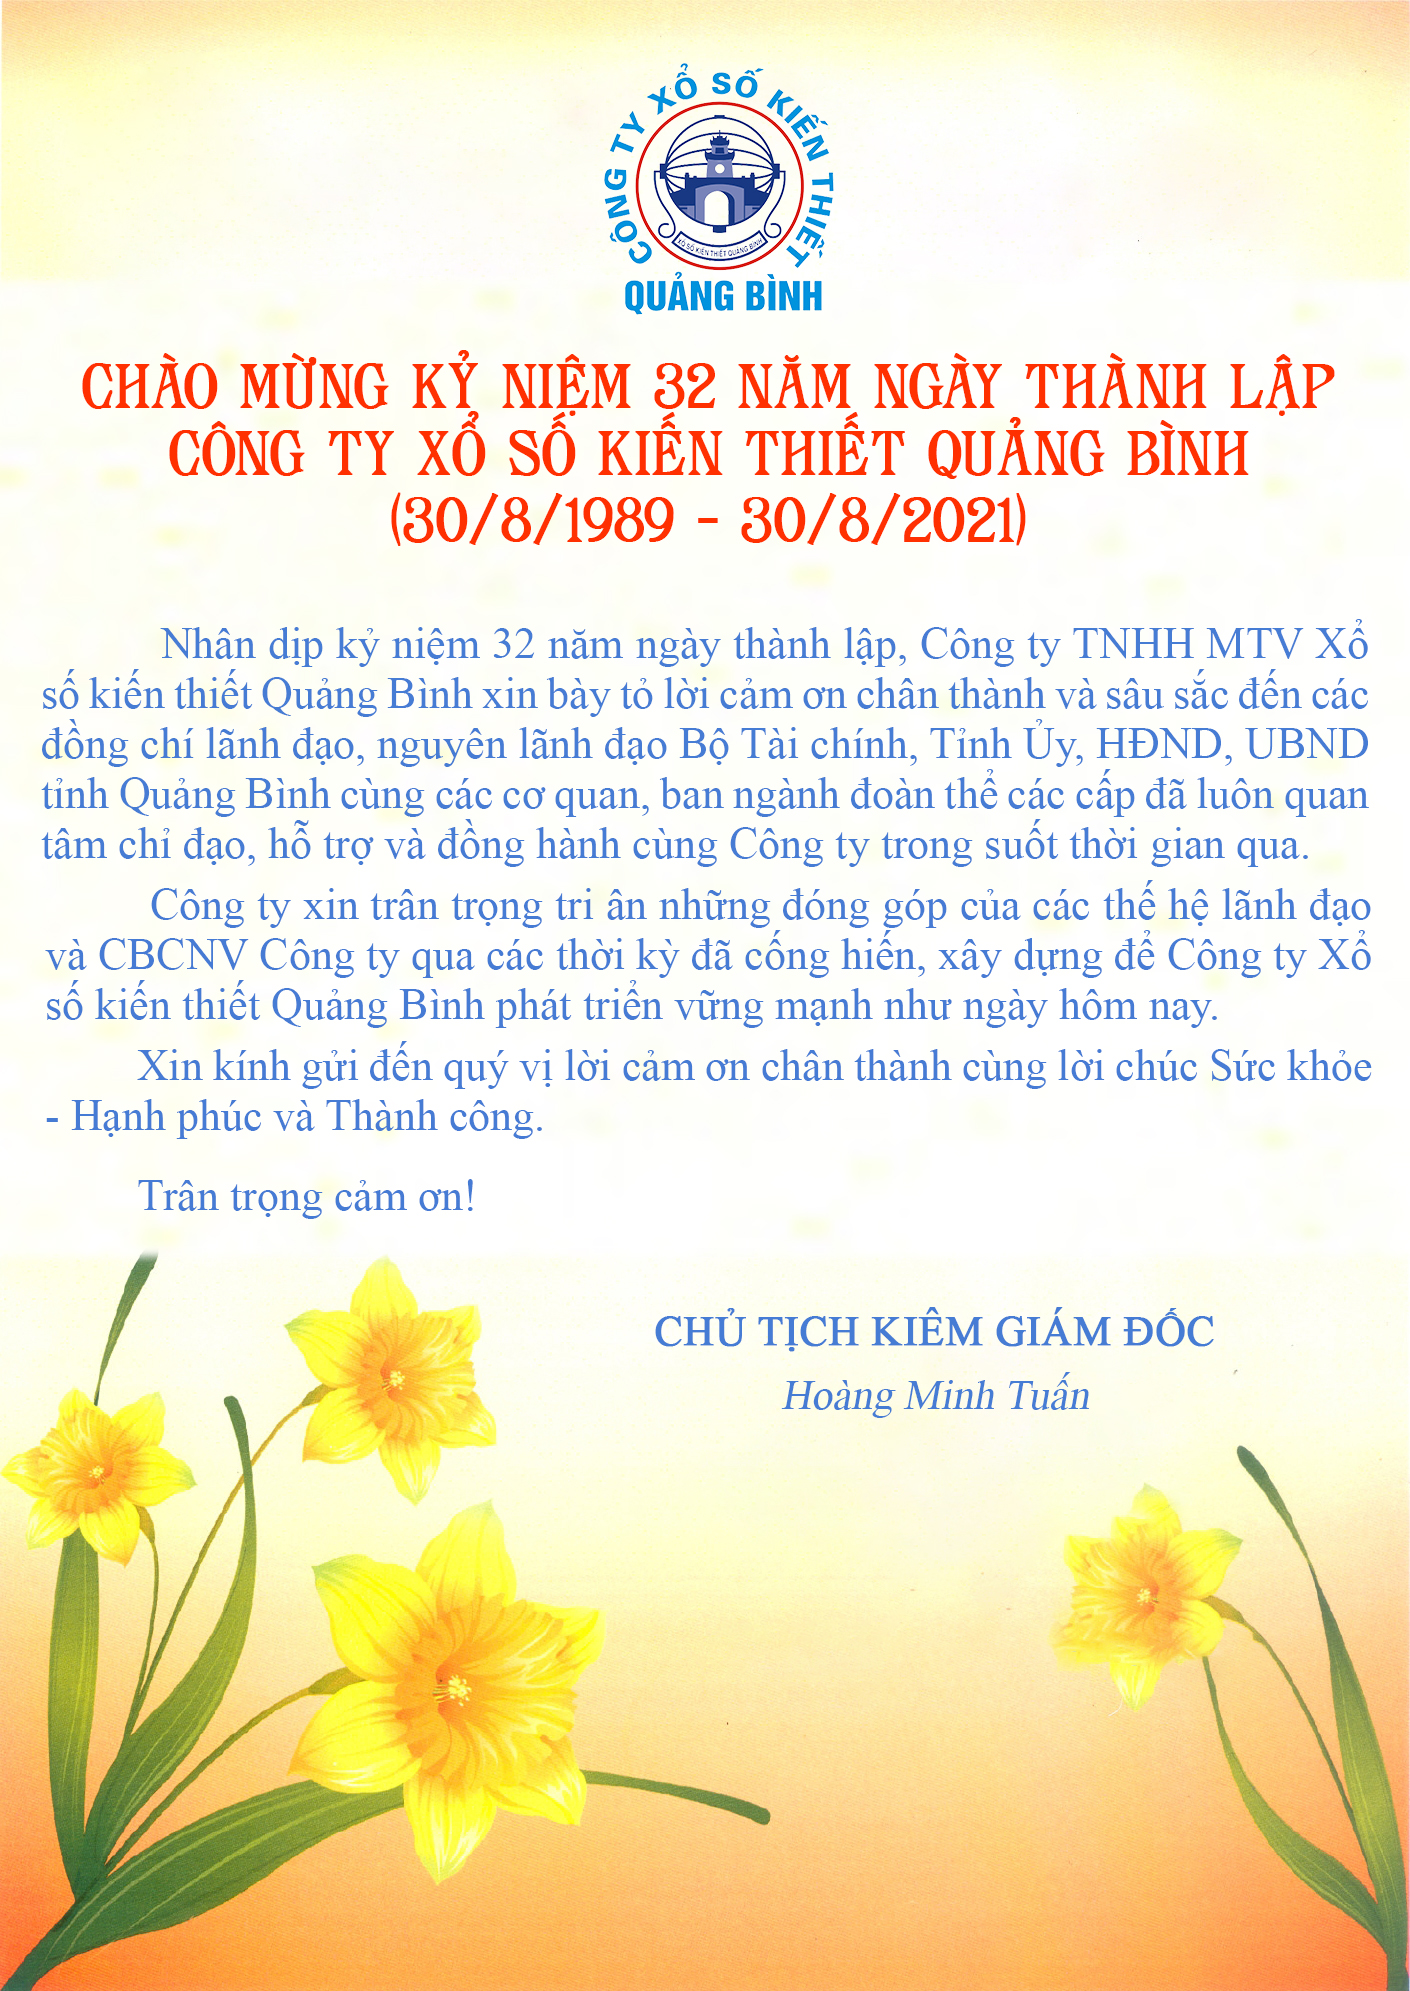 Chào mừng kỷ niệm 32 năm ngày thành lập Công ty Xổ số kiến thiết Quảng Bình (30/8/1989 - 30/8/2021)